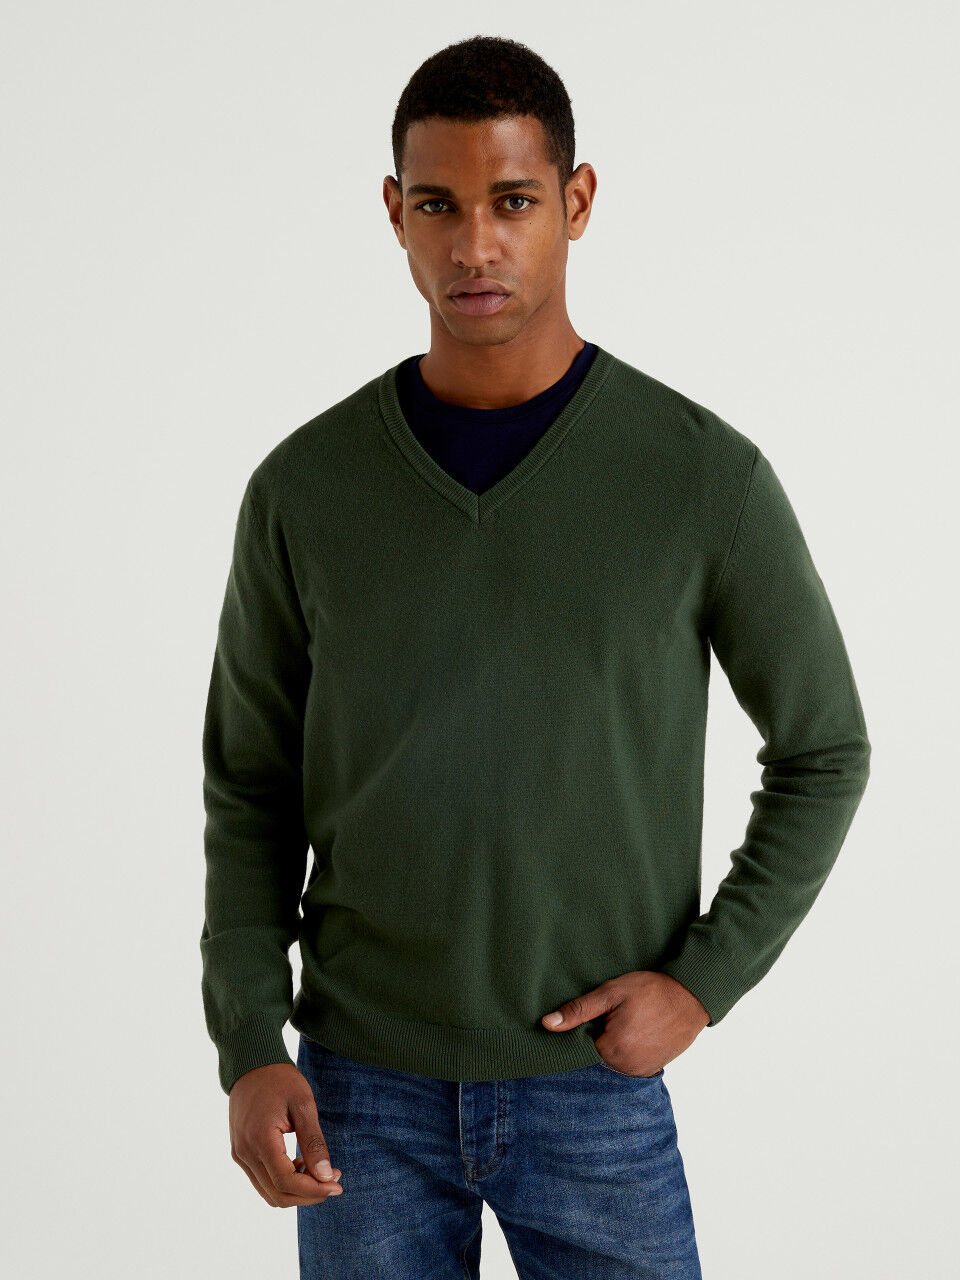 Benetton United Colours of Benetton 100% Wool Knitwear /Jumper 